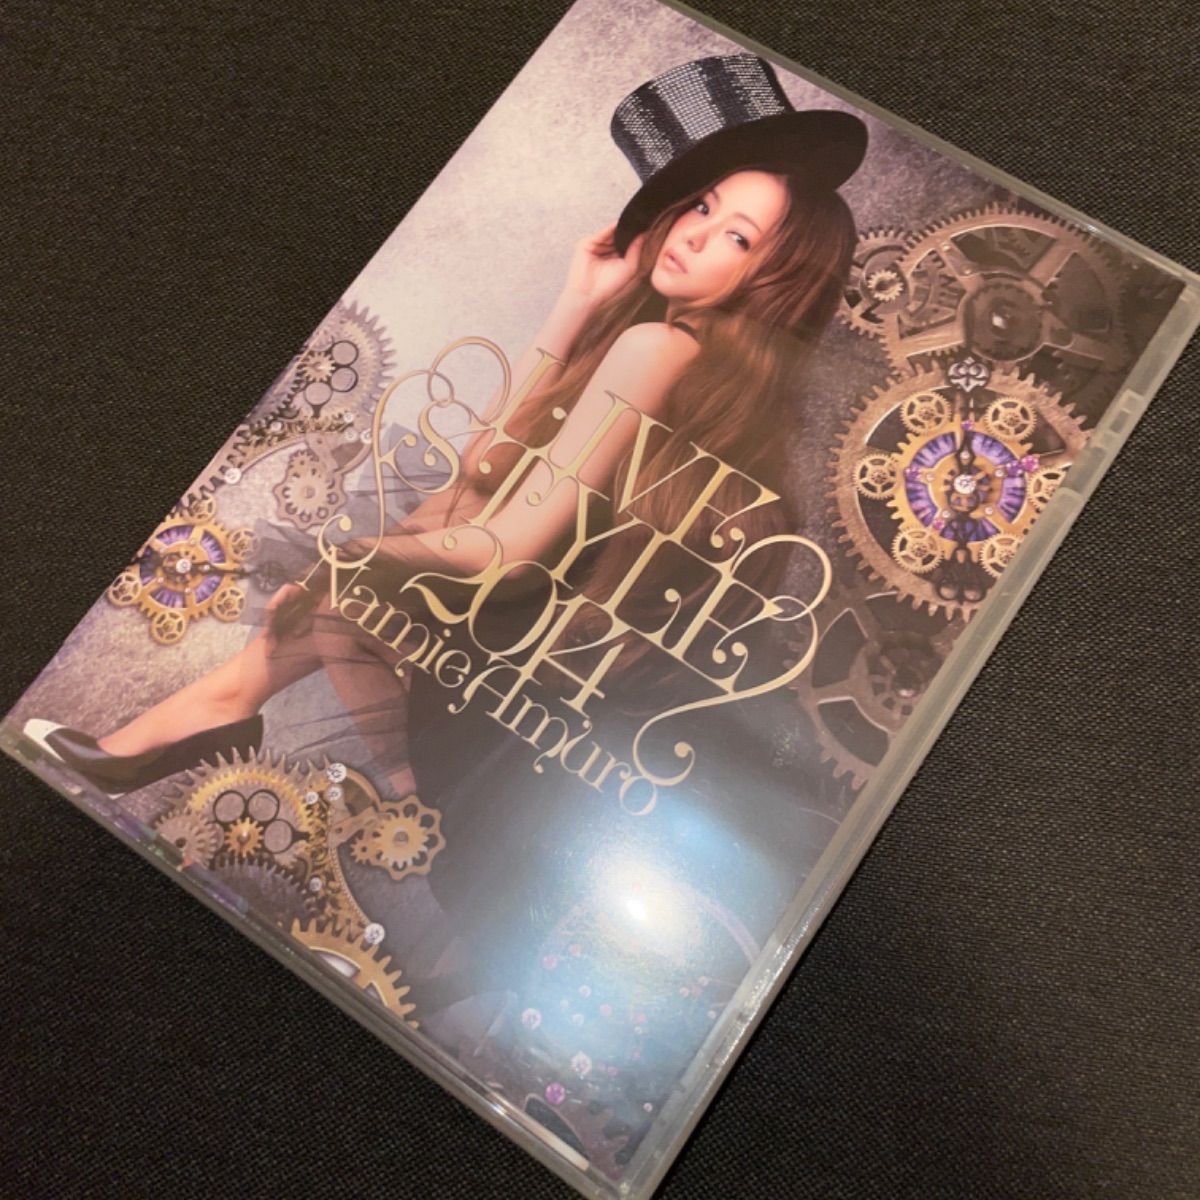 安室奈美恵　LIVE STYLE 2014　未開封DVD